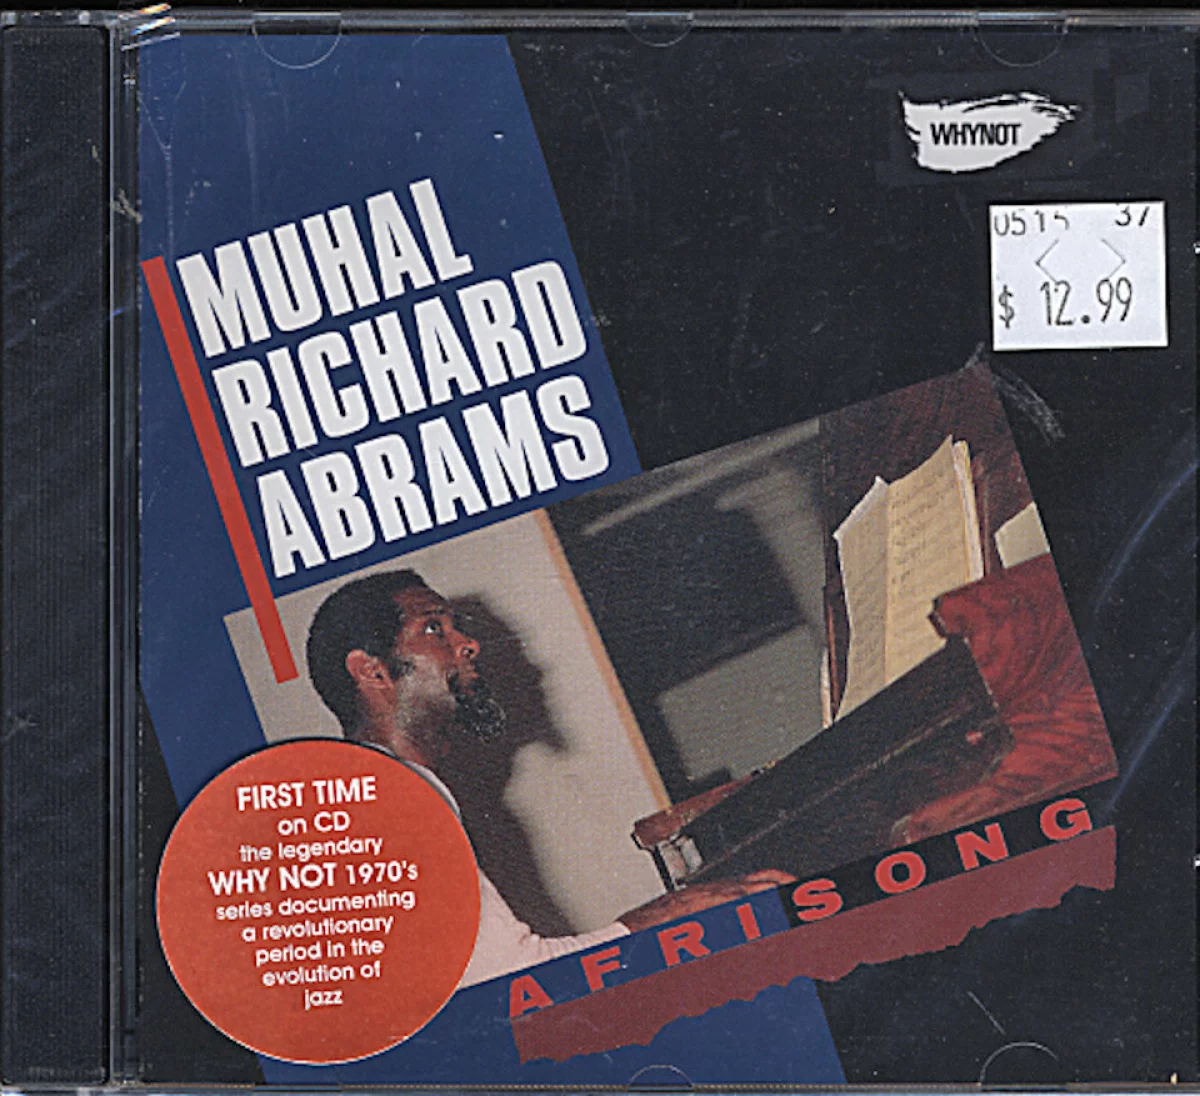 Muhal Richard Abrams CD, 2009 at Wolfgang's